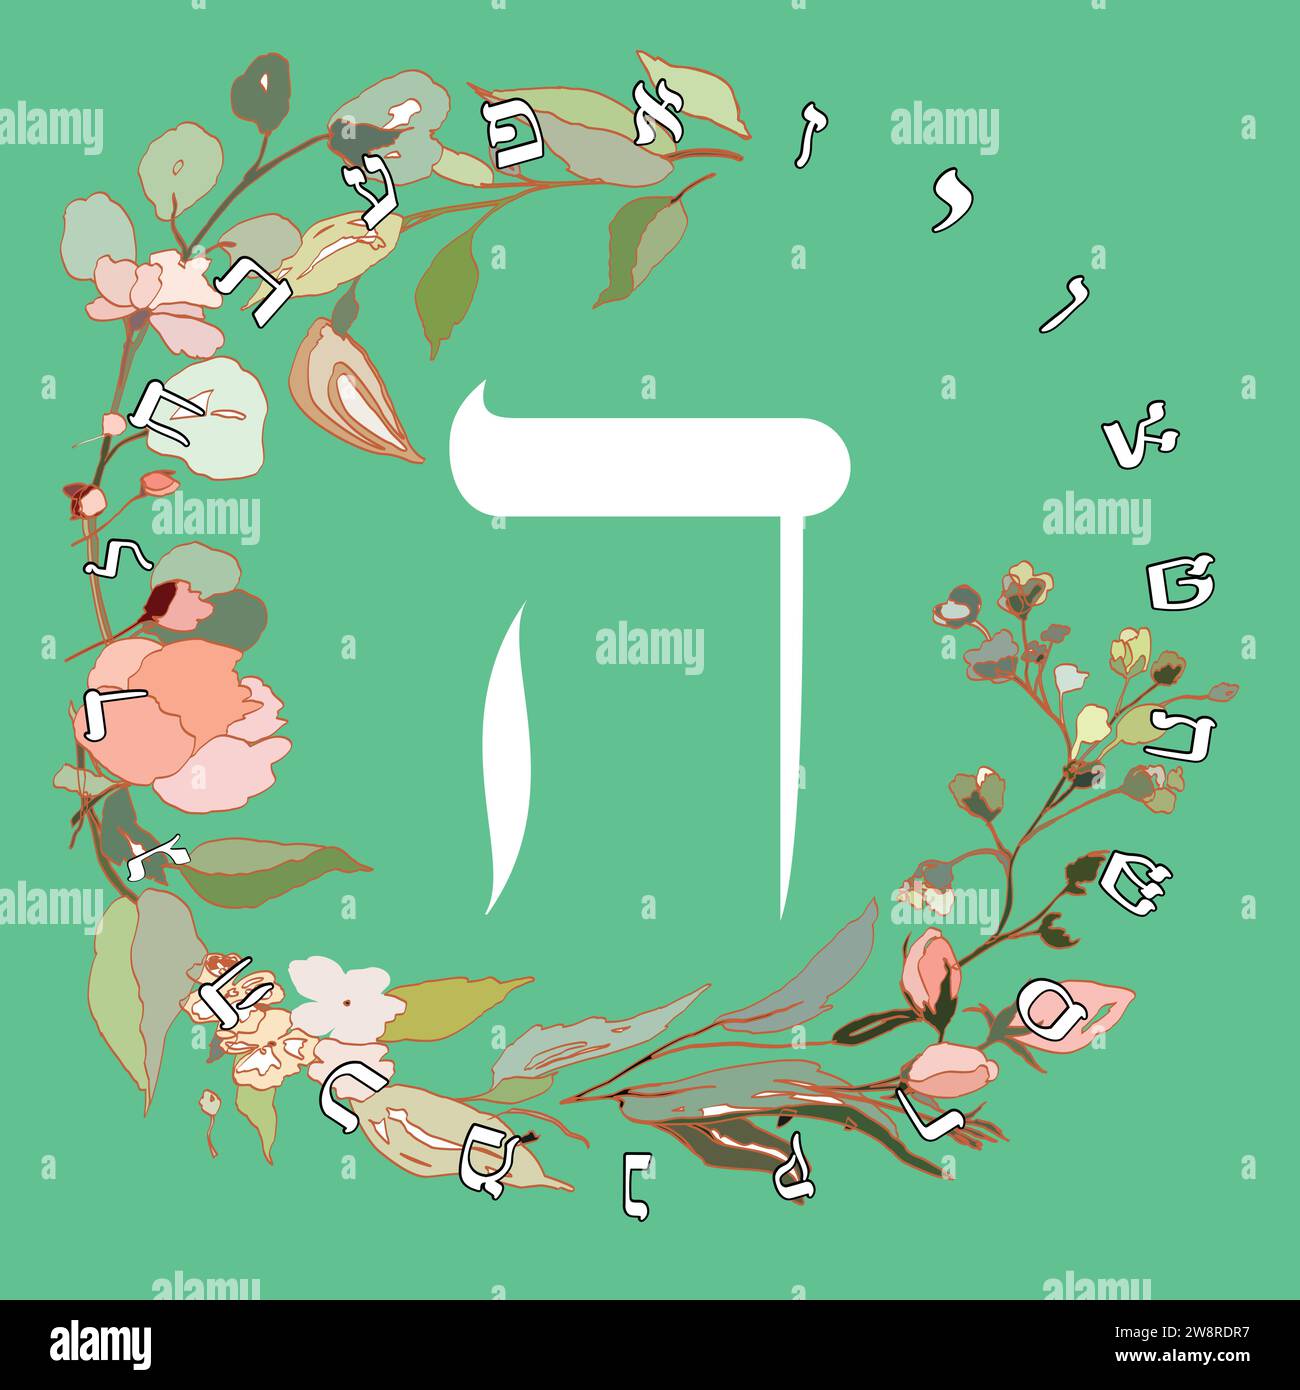 Illustrazione vettoriale dell'alfabeto ebraico con disegno floreale. Lettera ebraica chiamata Hei bianca su sfondo verde. Illustrazione Vettoriale